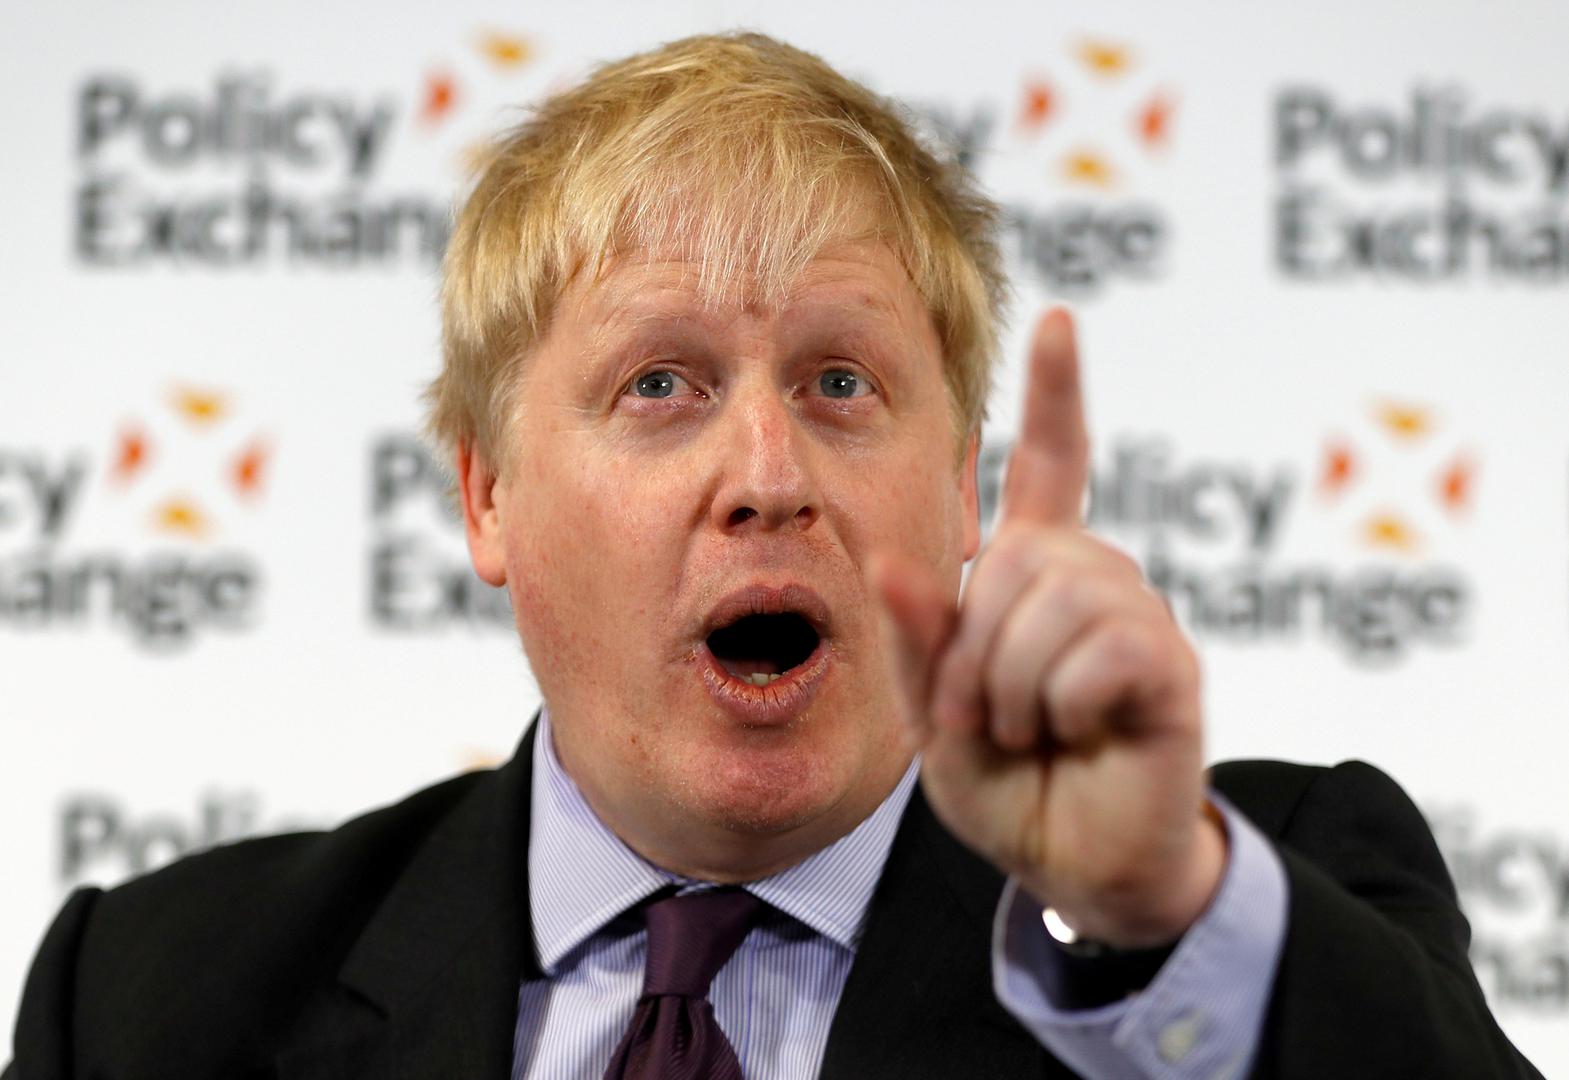 Boris Johnson - Na stranačkoj konvenciji, koja počinje 30. rujna, mogao bi je ovaj tvrdi “brexitovac” pokušati srušiti